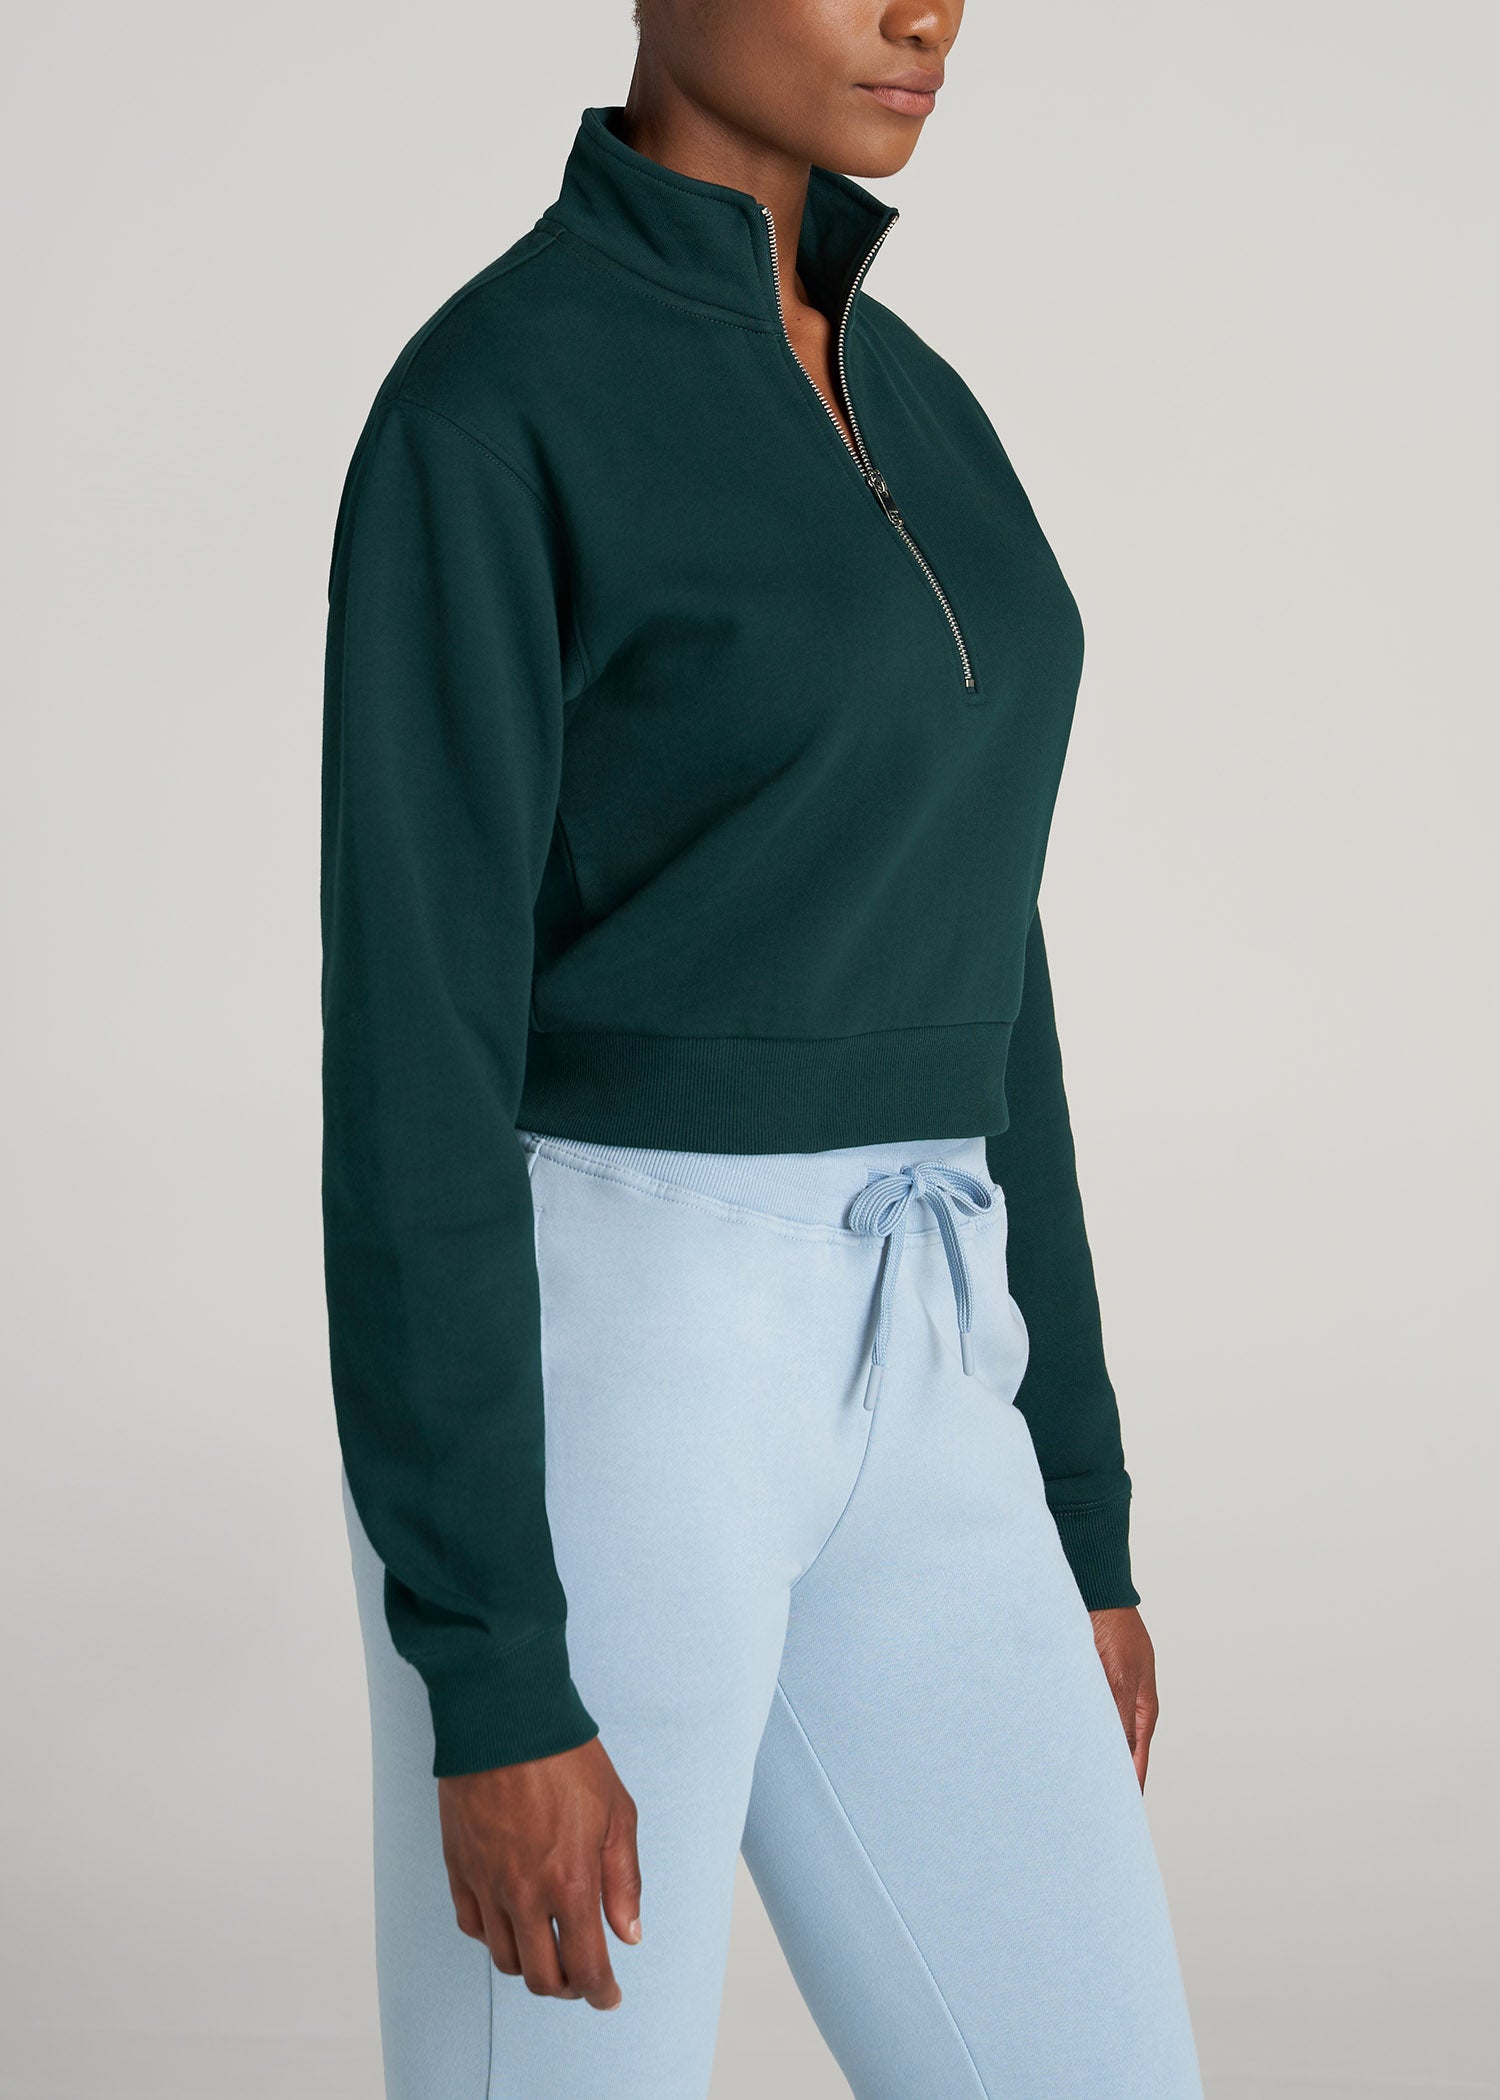 Womens Sweatshirts Half Zip Cropped Pullover Fleece Quarter Zipper